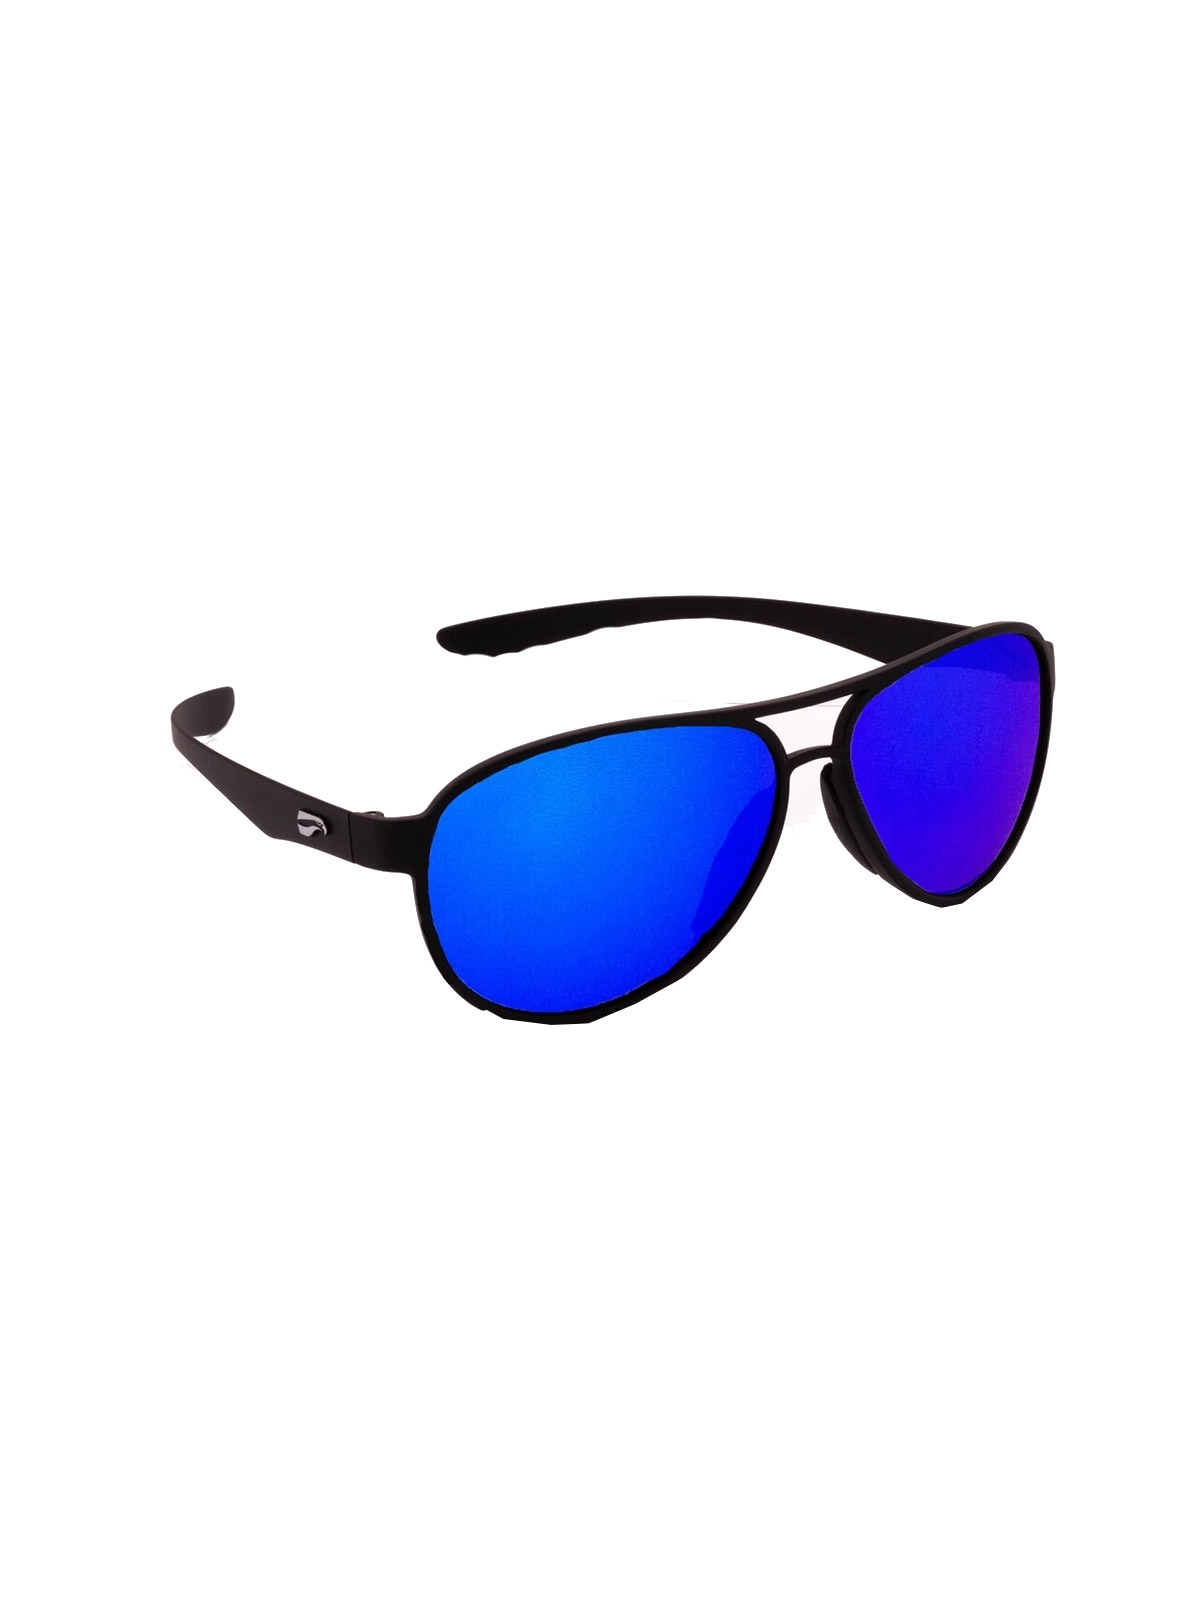 Flying Eyes Sunglasses Kestrel Aviator - Matte Black Frame, Mirrored Sapphire Lenses